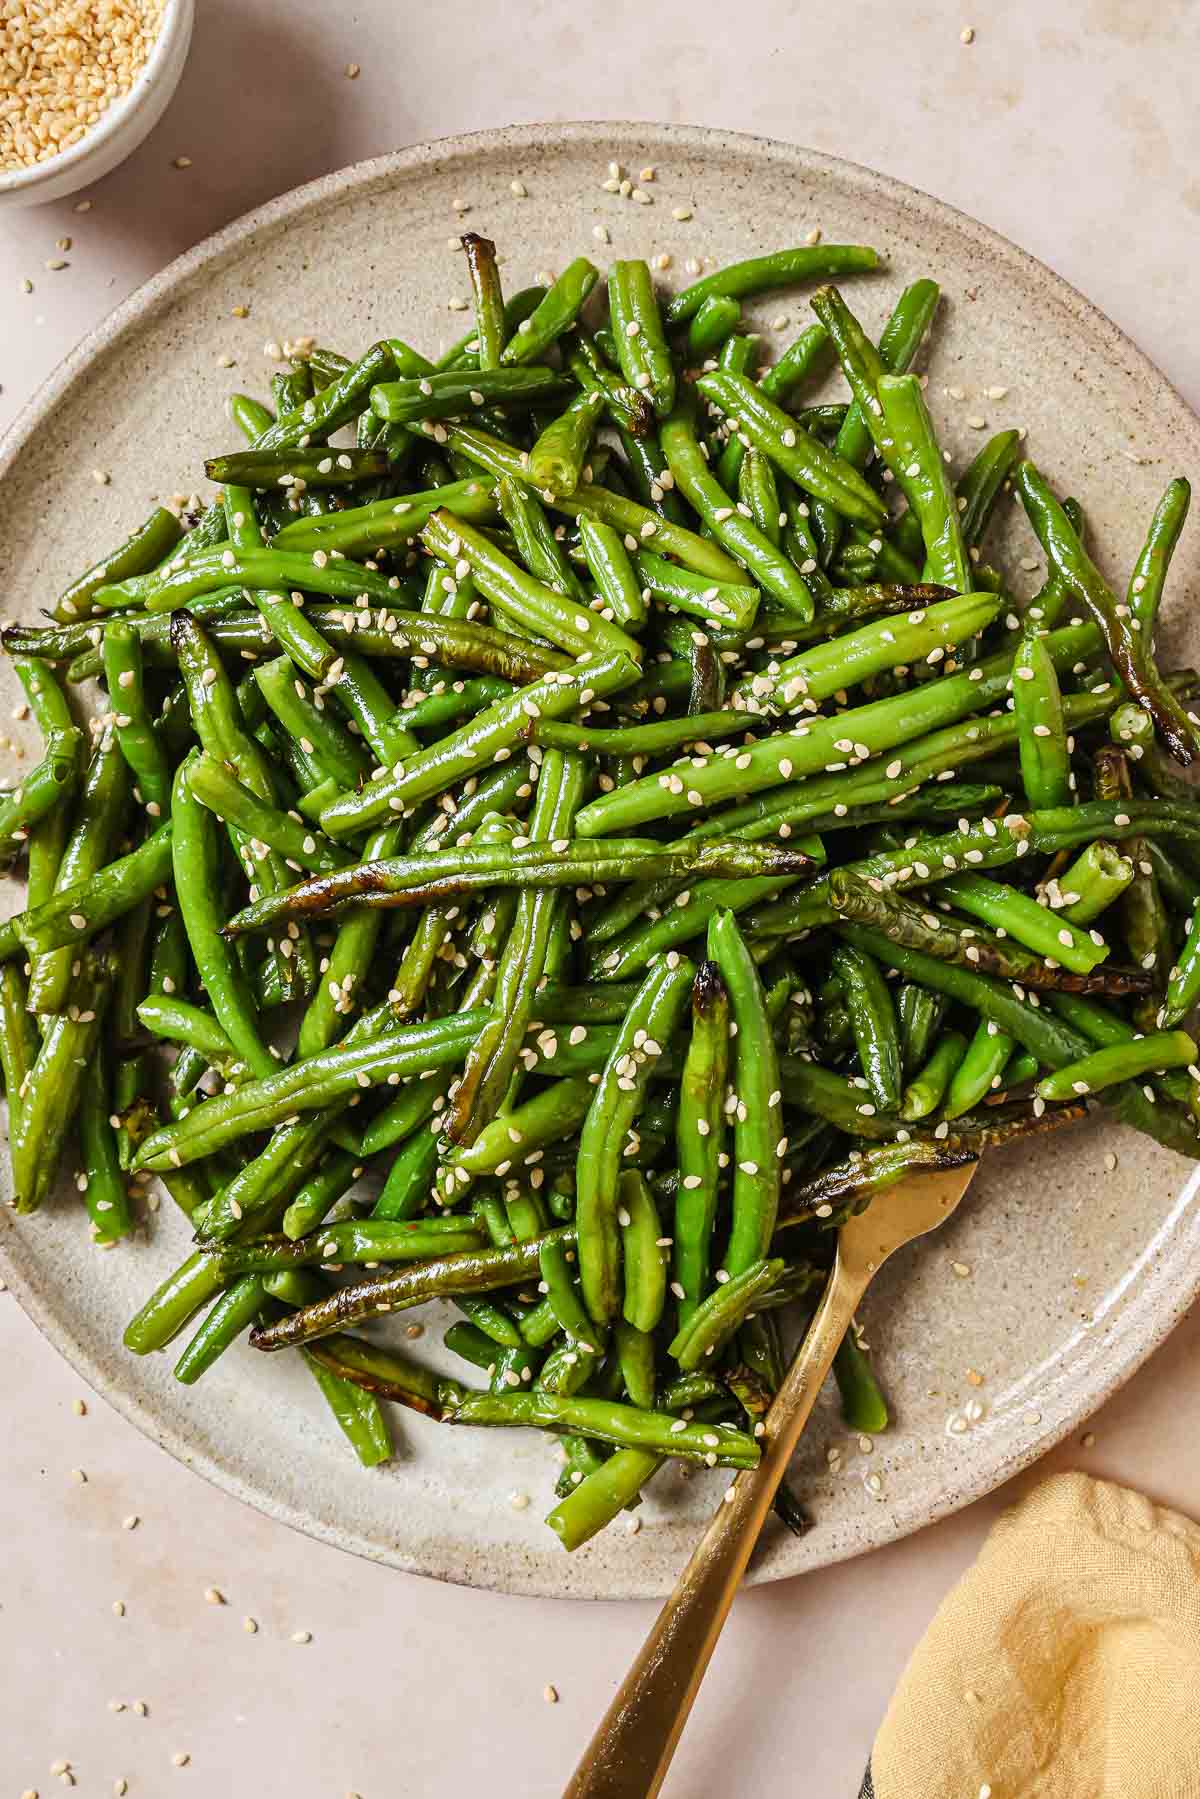 https://iheartumami.com/wp-content/uploads/2023/08/Air-fryer-frozen-green-beans-3.jpg